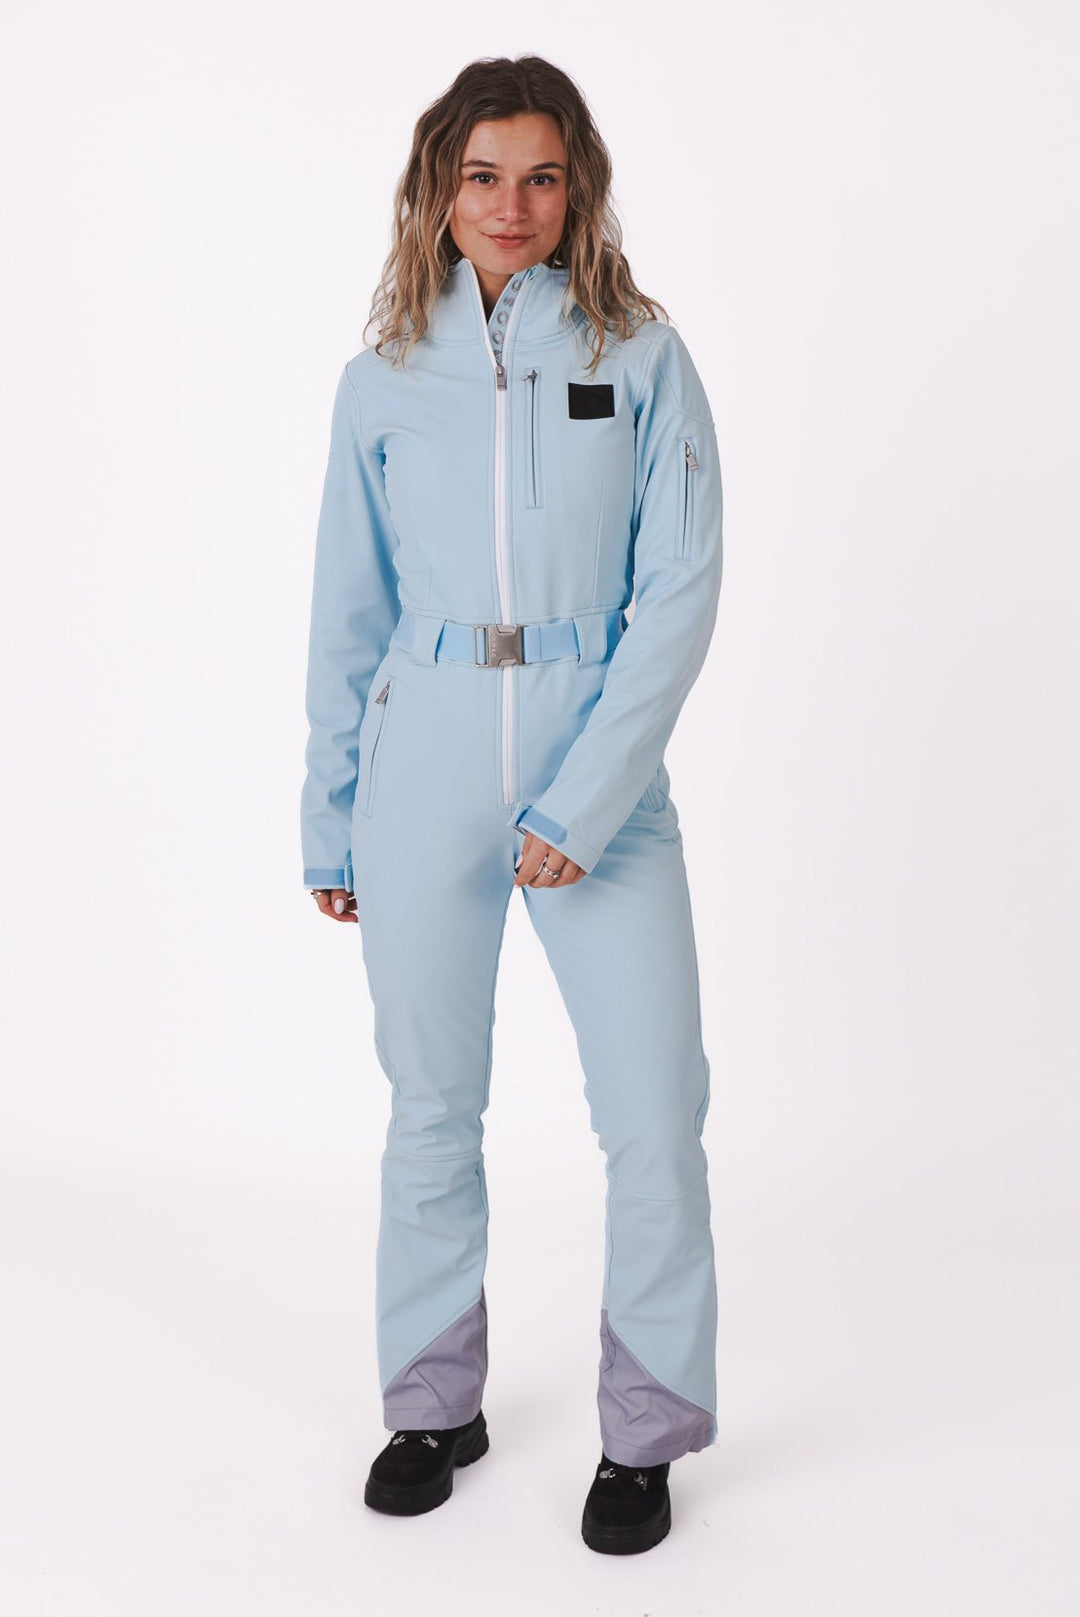 Ice Blue Chic Ski Suit